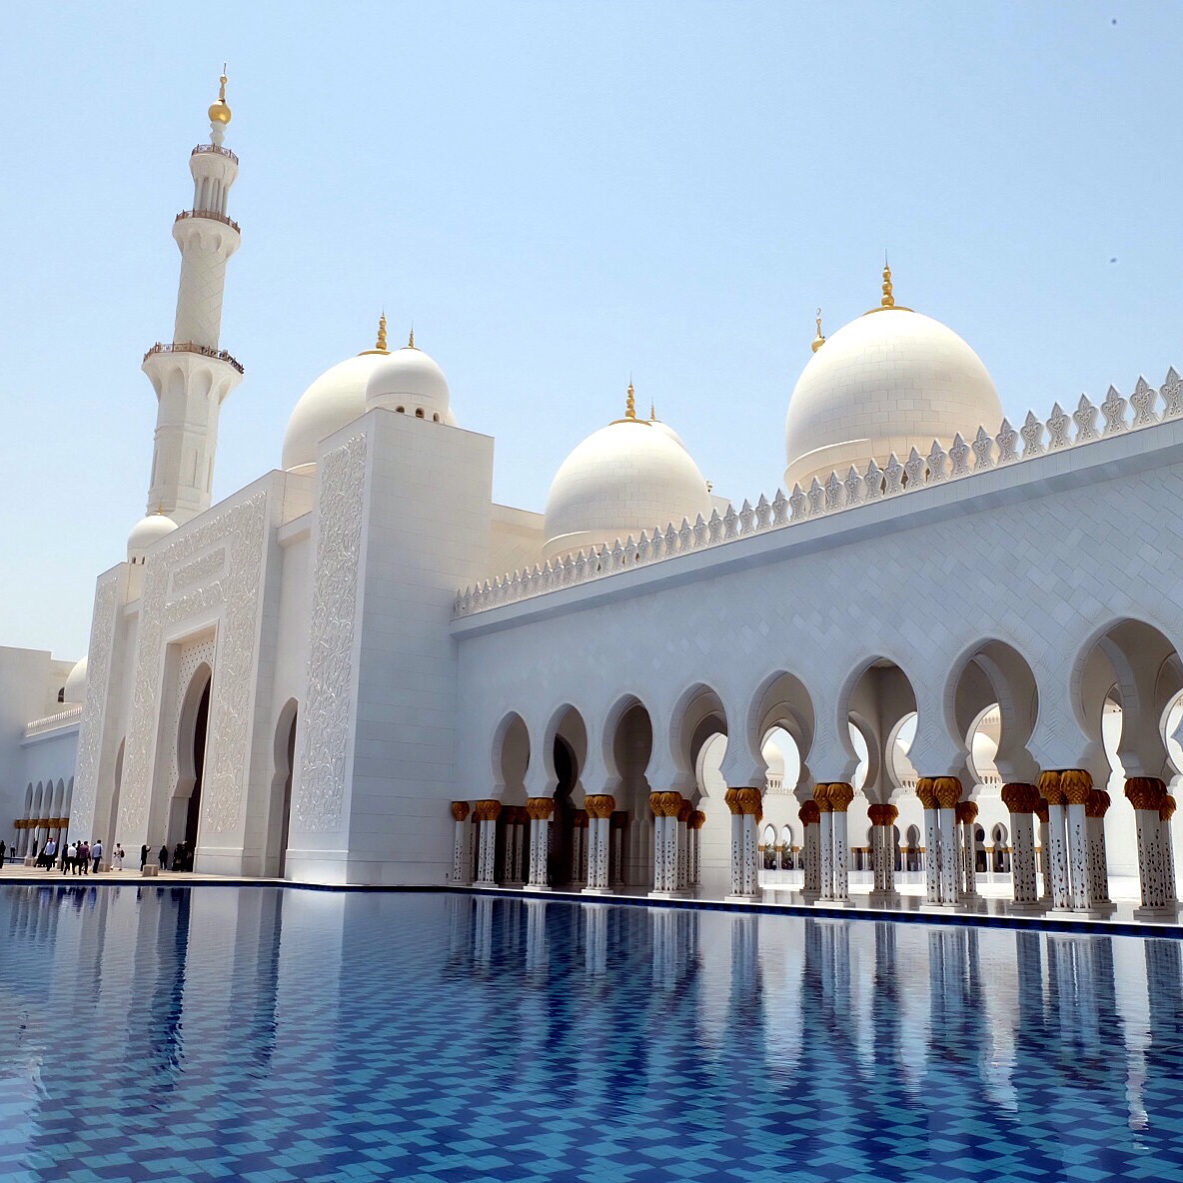 Cuando Mucho es Mejor!! Shaikh Zayed Grand Mosque me dejaste sin aliento! SWIPE 2 THE LEFT!! 🕌🇦🇪🏽 @goiard @travelwiserd